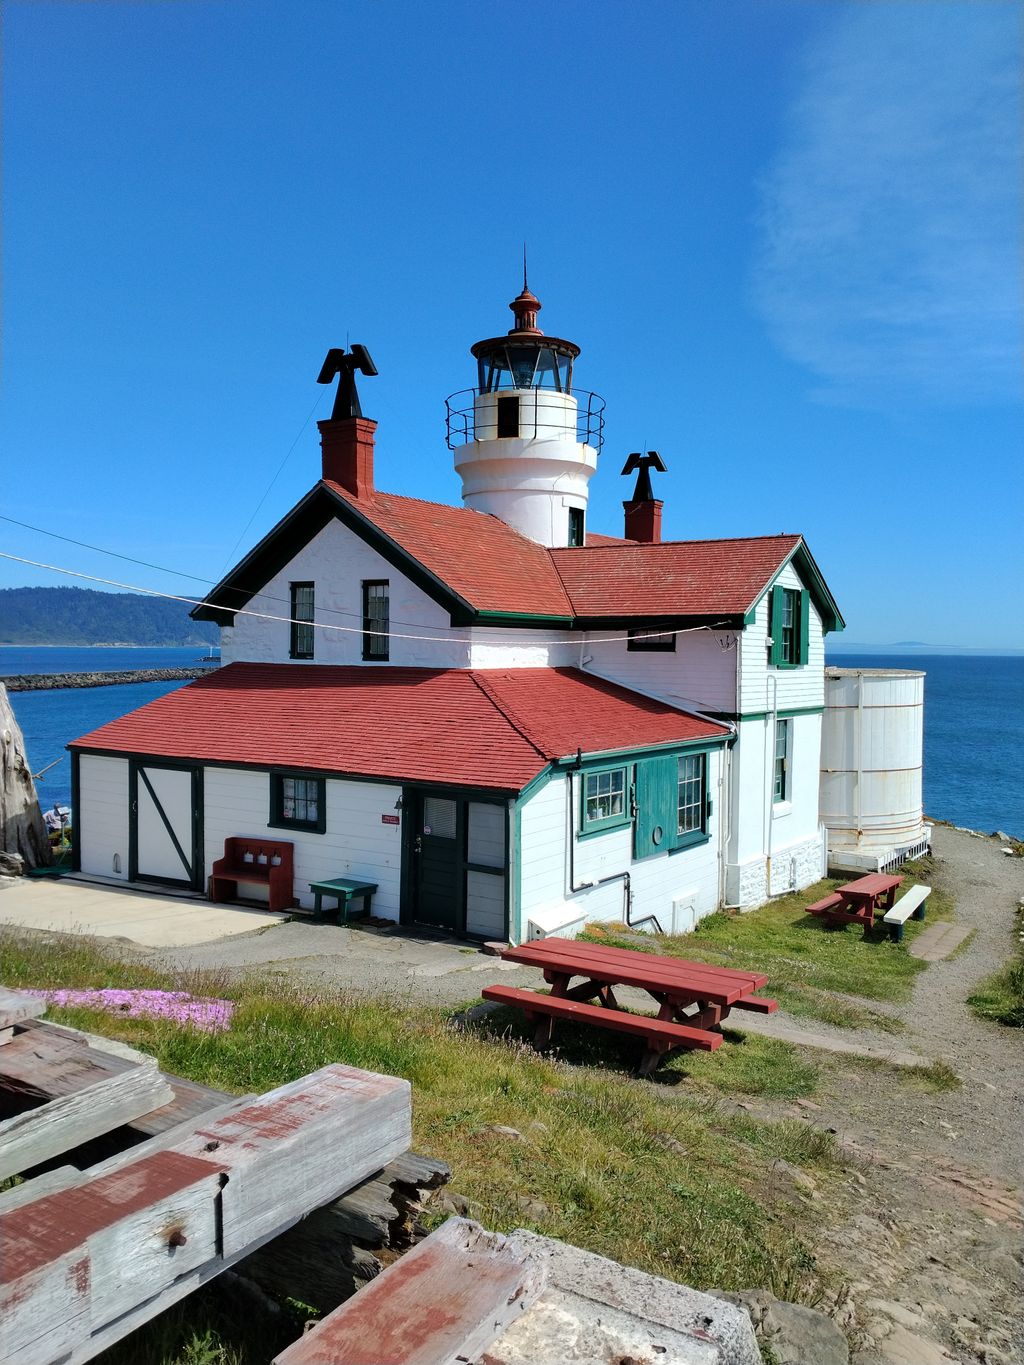 California Historical Landmark 951: Battery Point Lighthouse